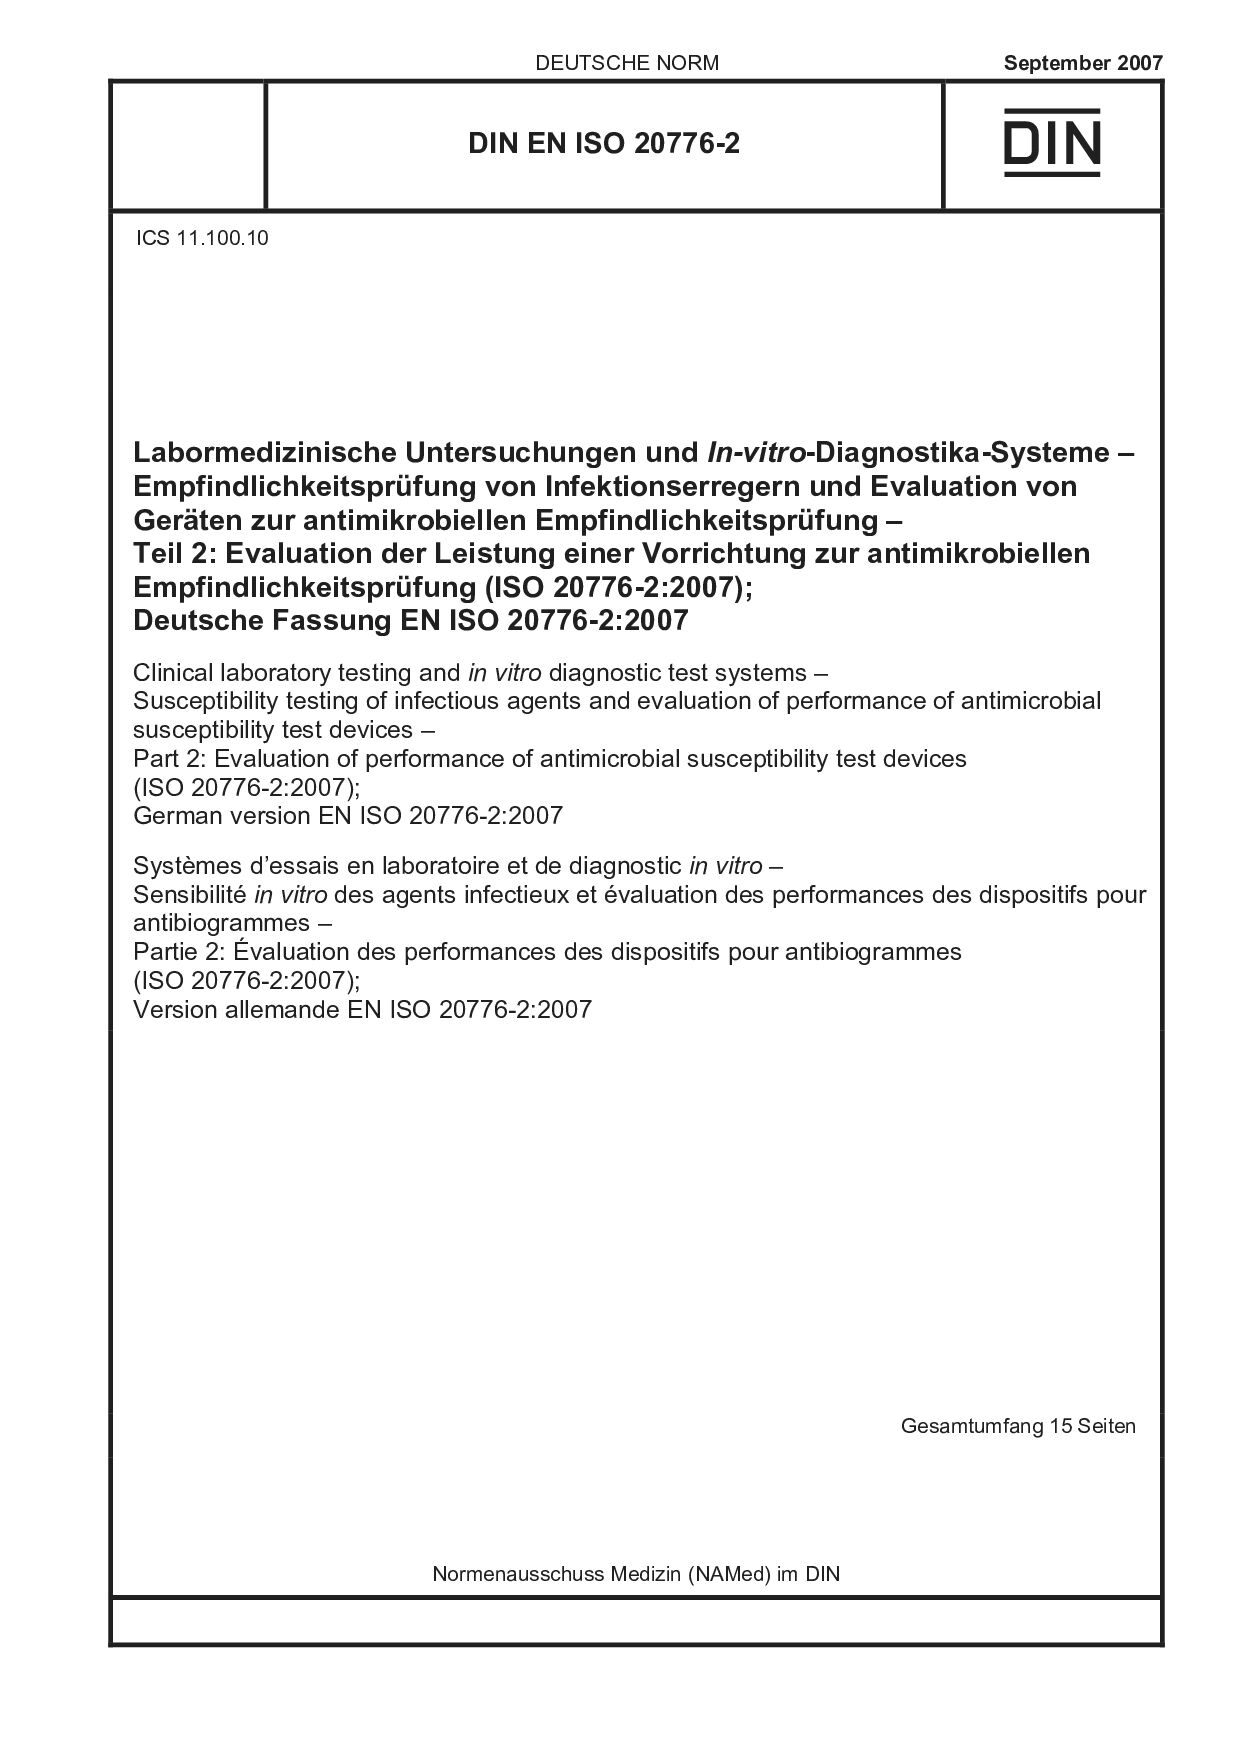 DIN EN ISO 20776-2:2007封面图